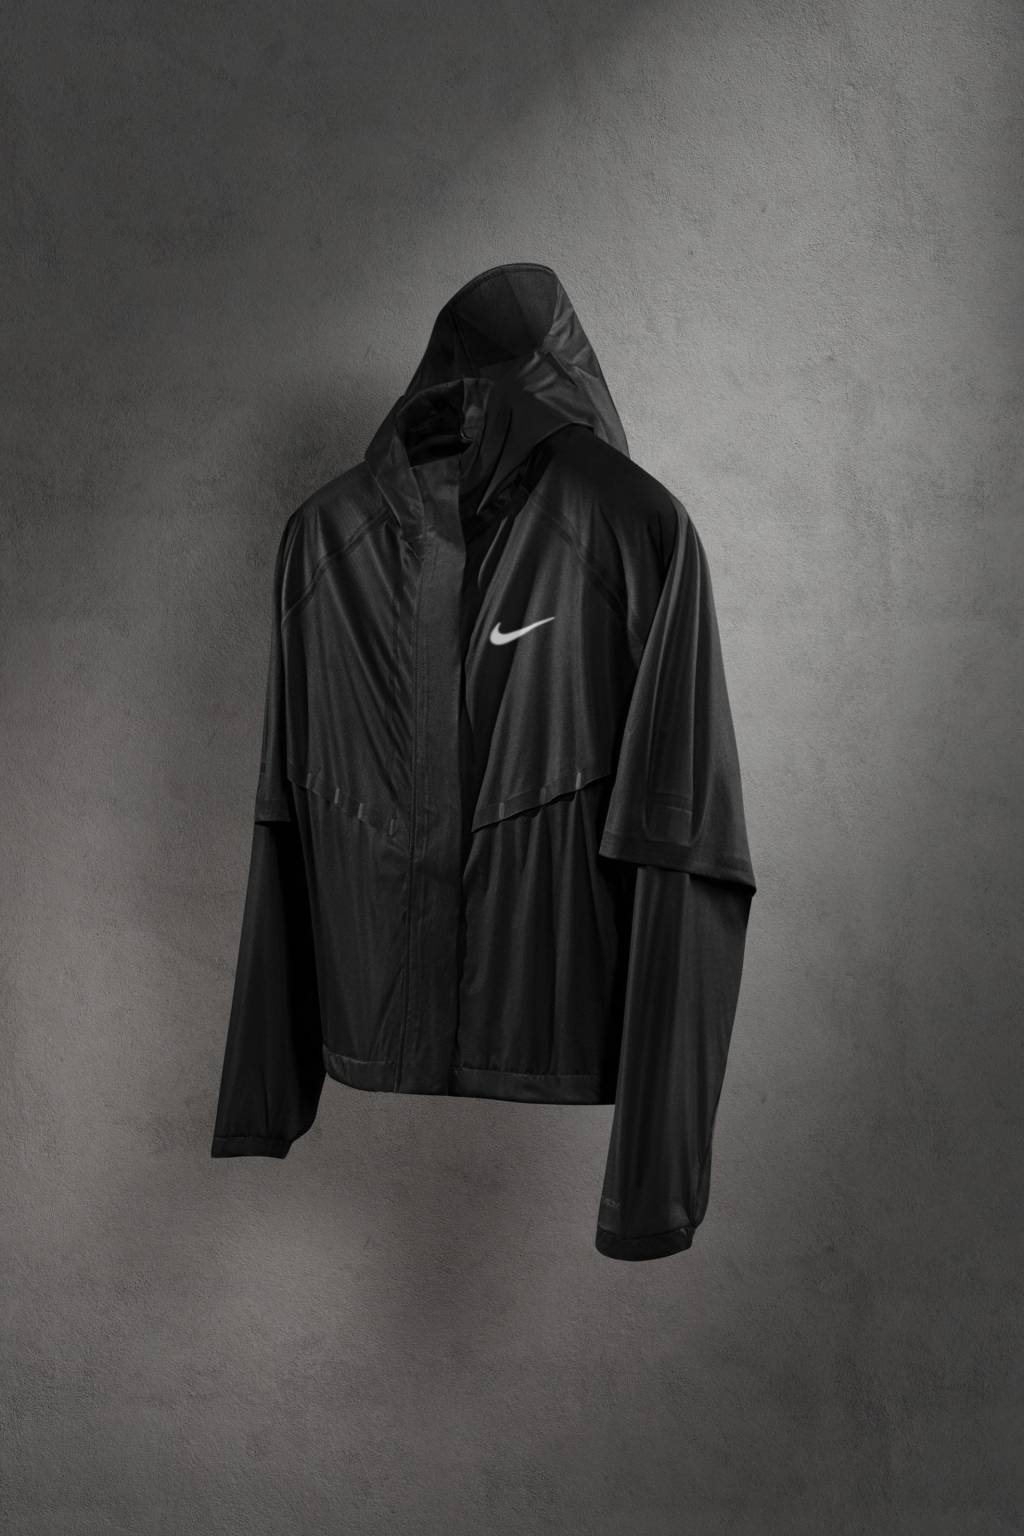 Nike lança jaqueta esportiva mais tecnológica do mundo; tecido muda de forma para refrescar o atleta